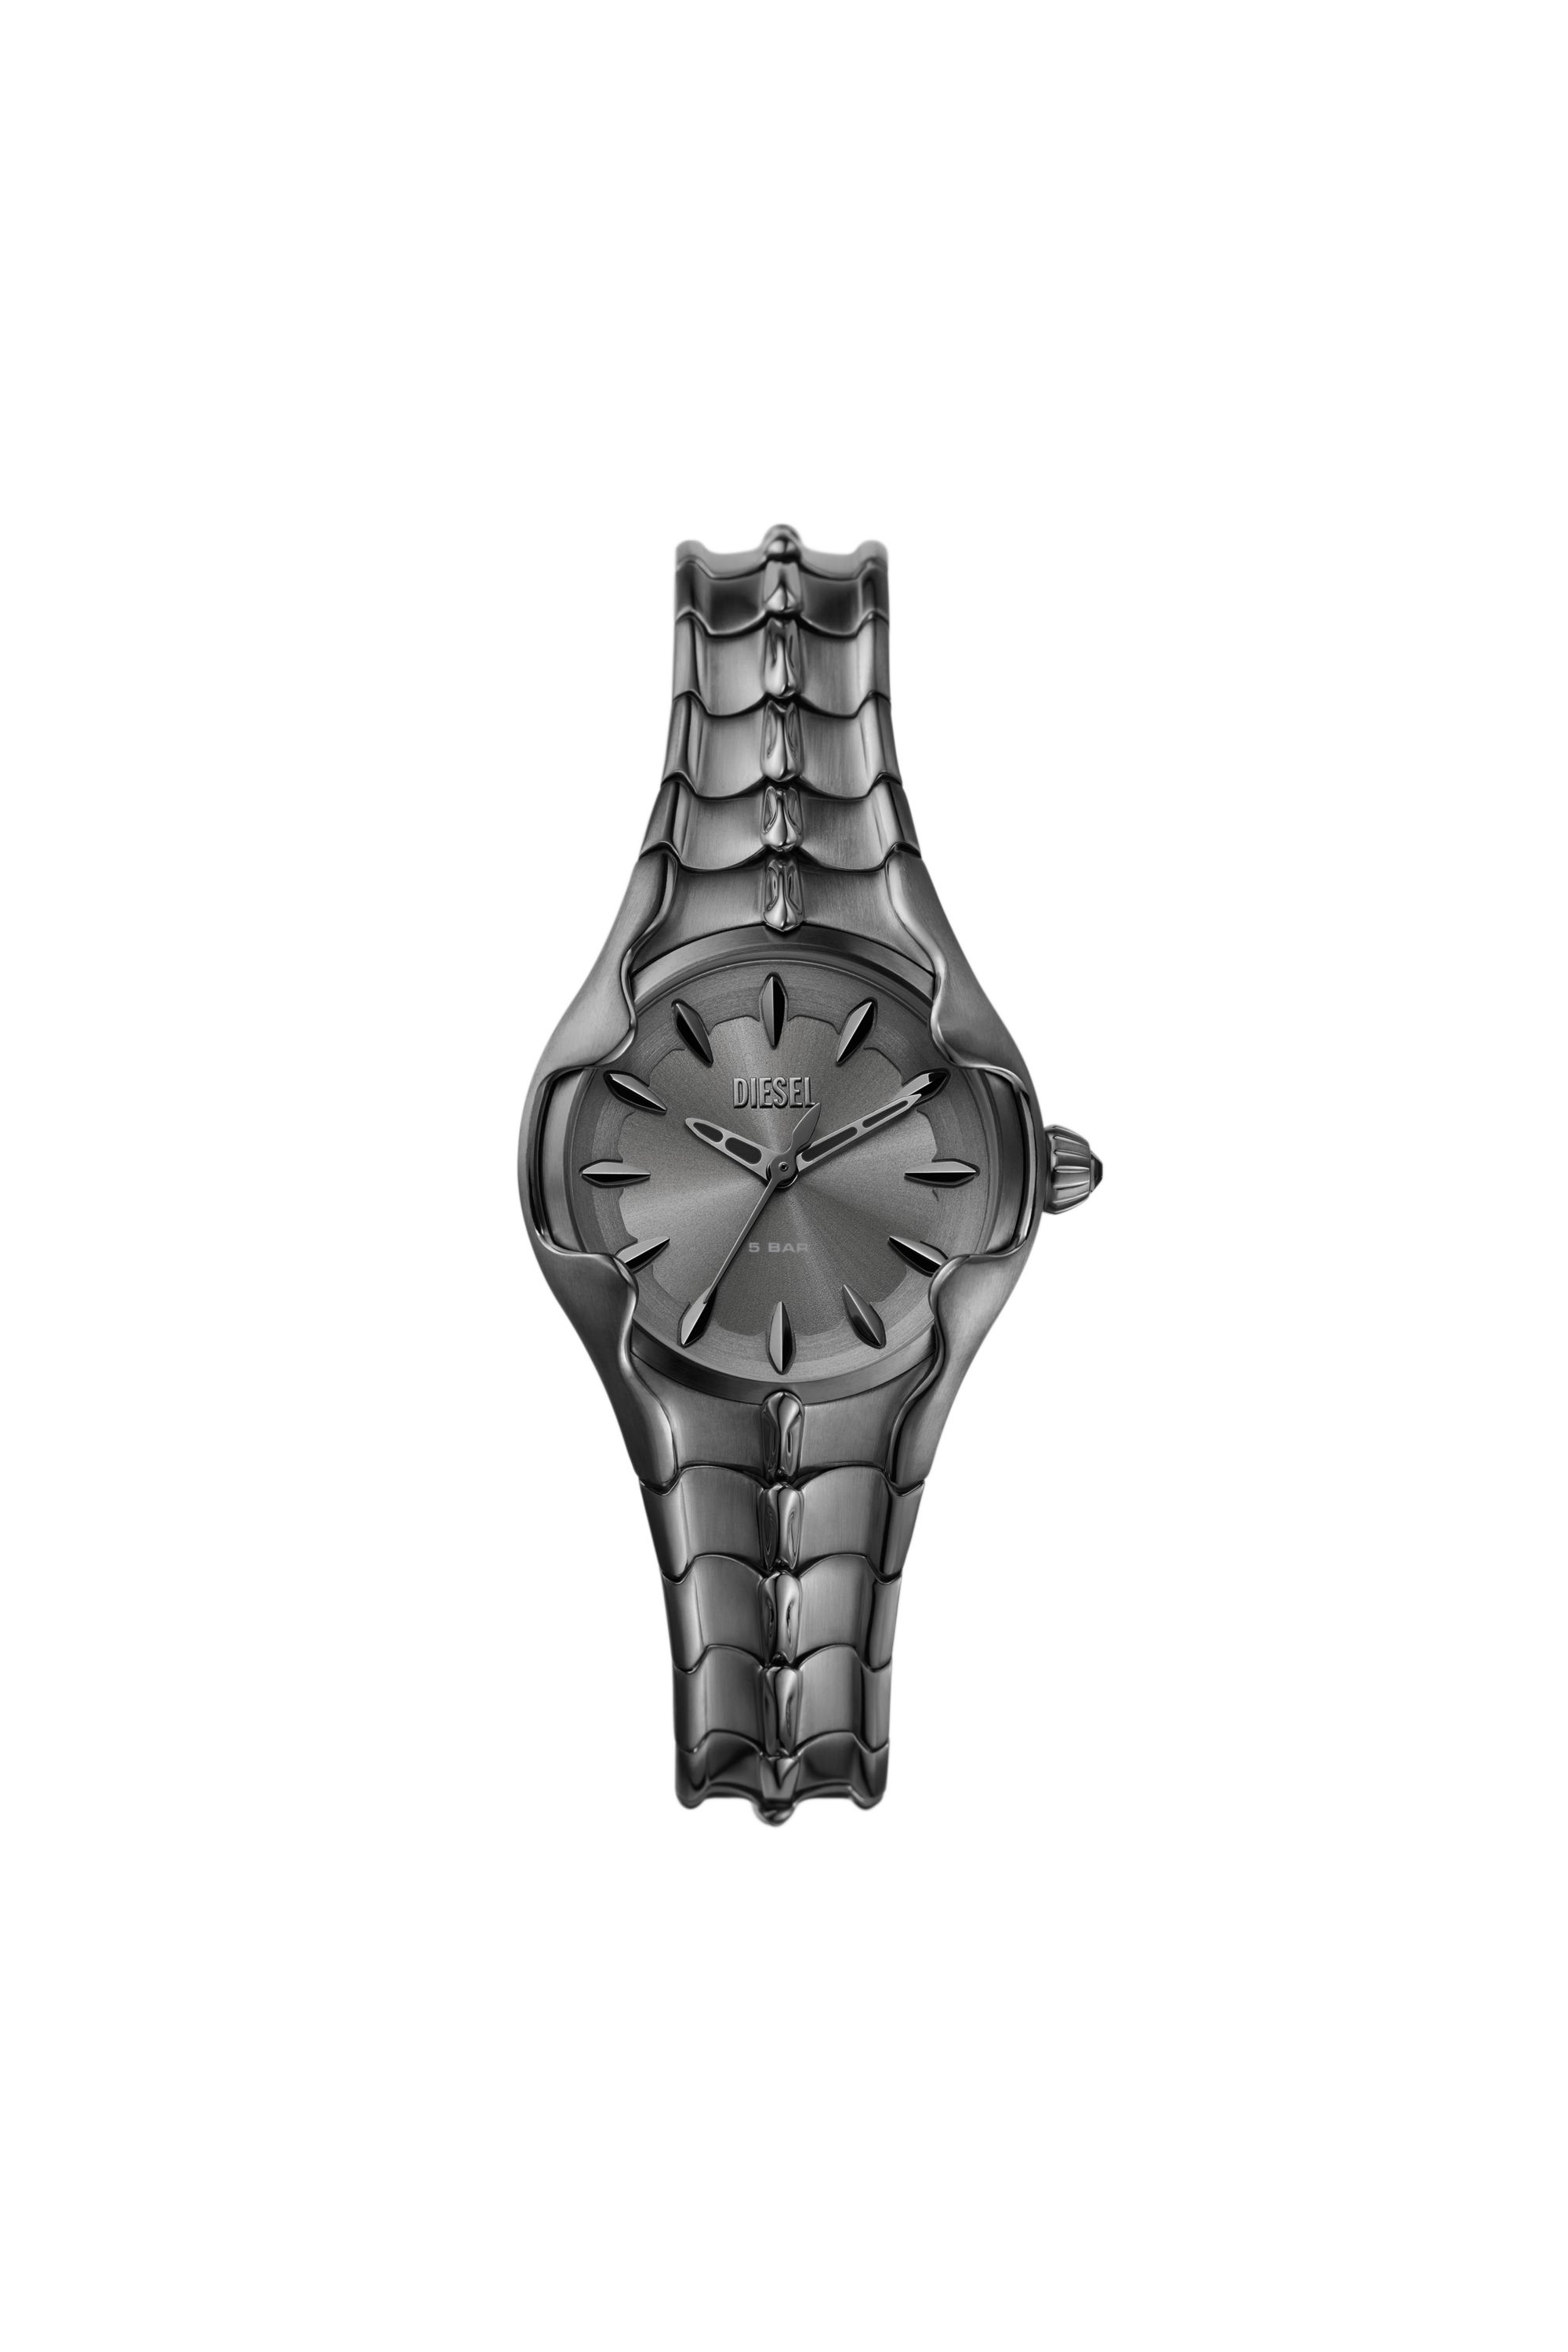 Diesel - DZ5603, Female Vert three-hand gunmetal stainless steel watch in Grey - Image 1